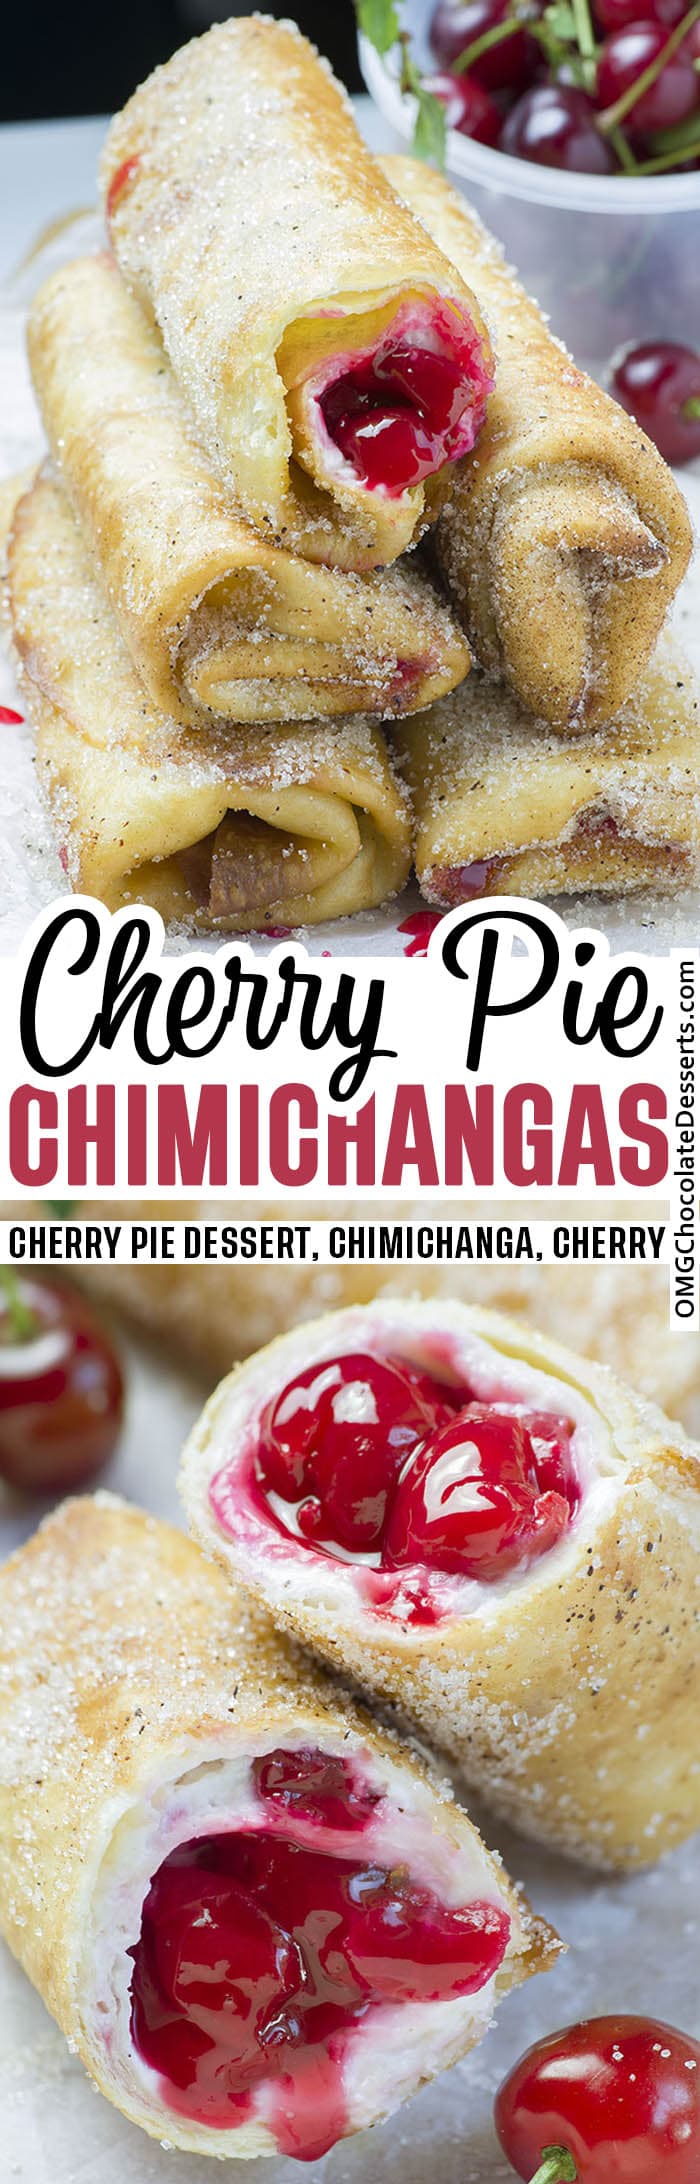 Cherry Cheesecake Chimichangas